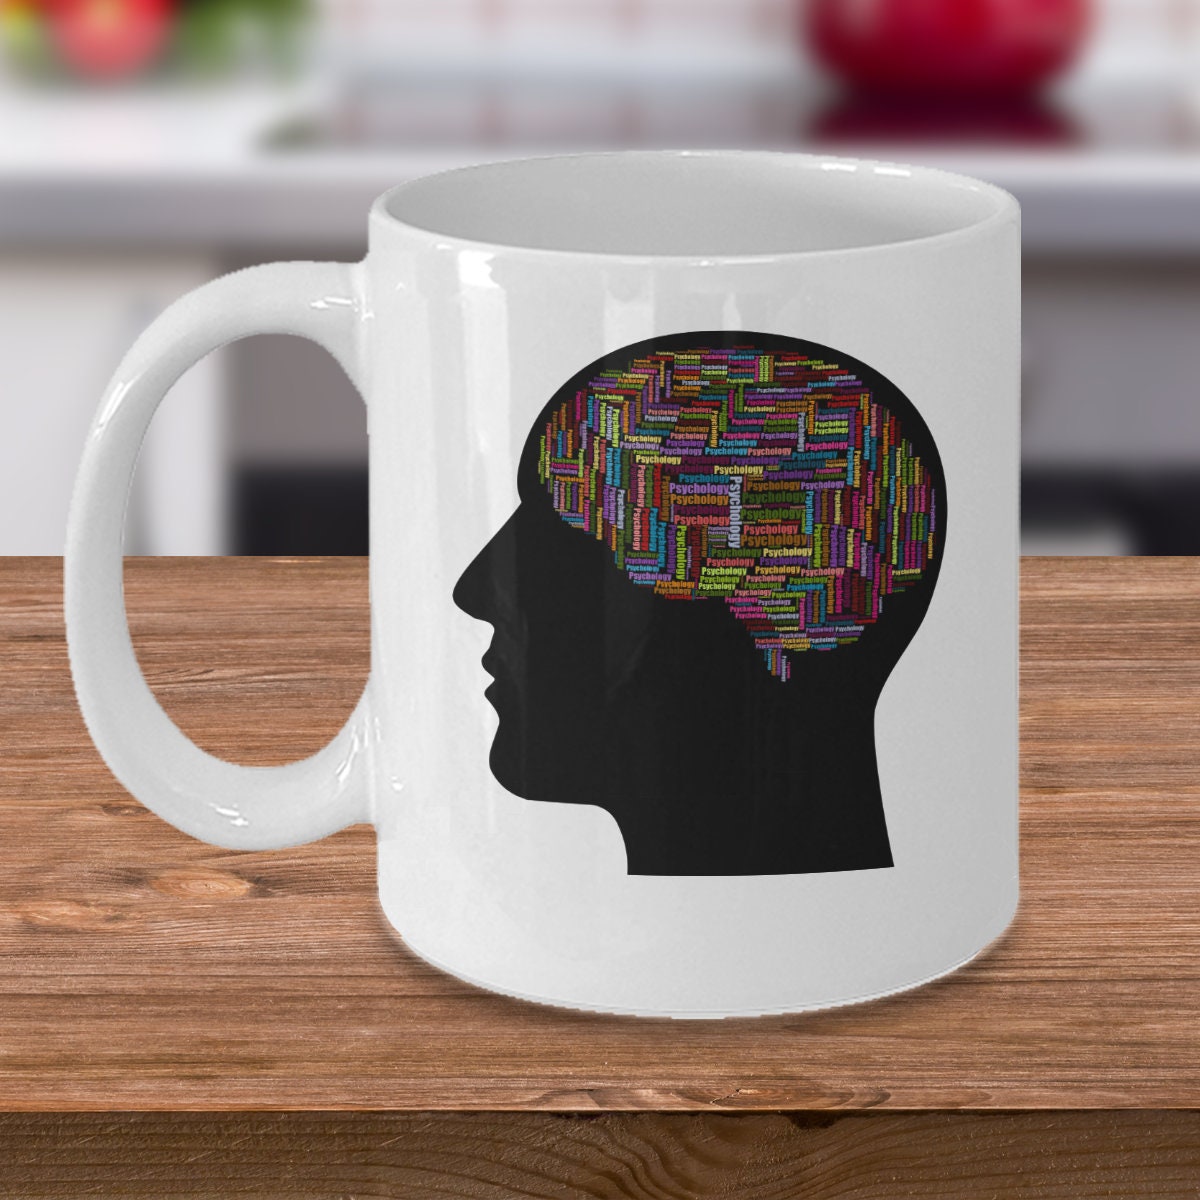 psychologist Freud Jung Adler Pavlov funny gift Psychology brain coffee mug 